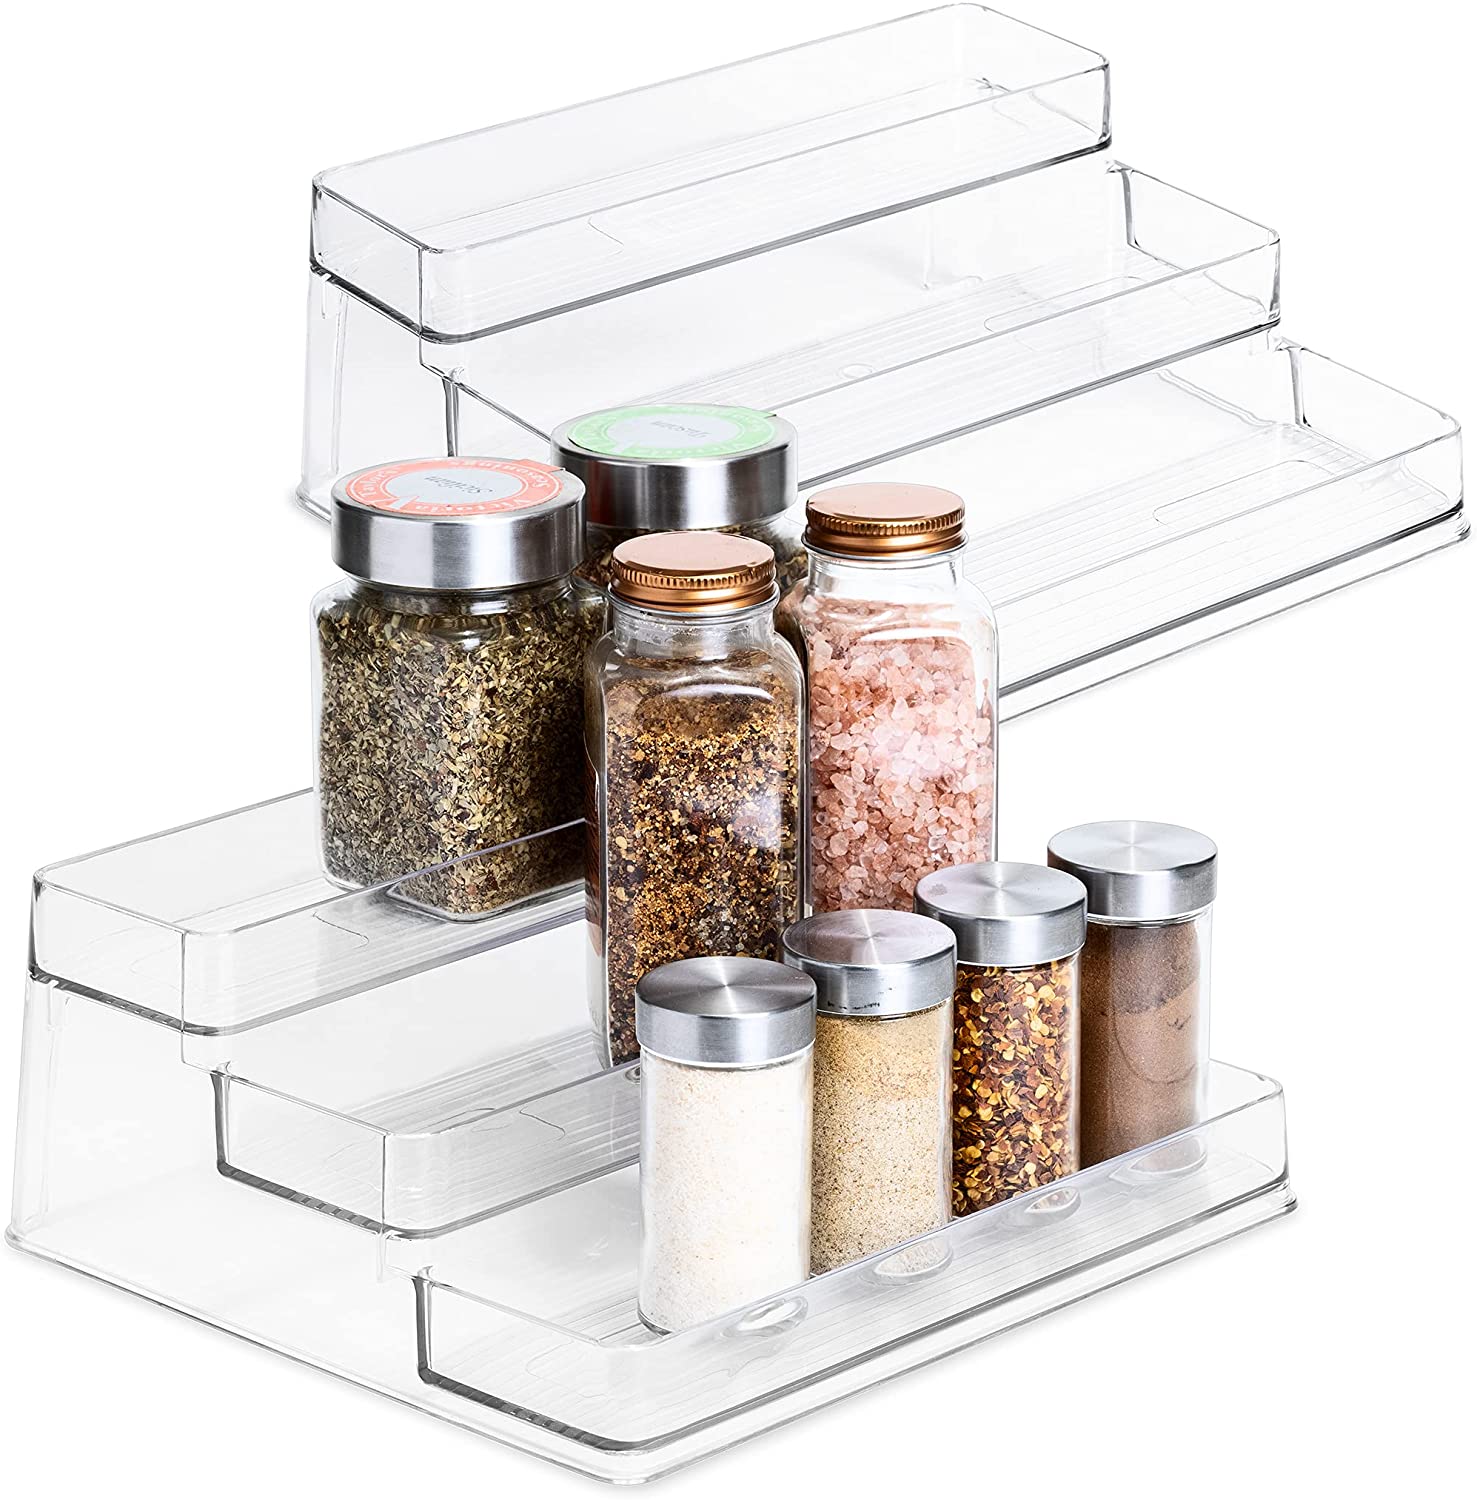 https://www.shopsmartdesign.com/cdn/shop/products/3-tier-plastic-spice-rack-clear-smart-design-kitchen-8003401as2-incrementing-number-898910.jpg?v=1679346308